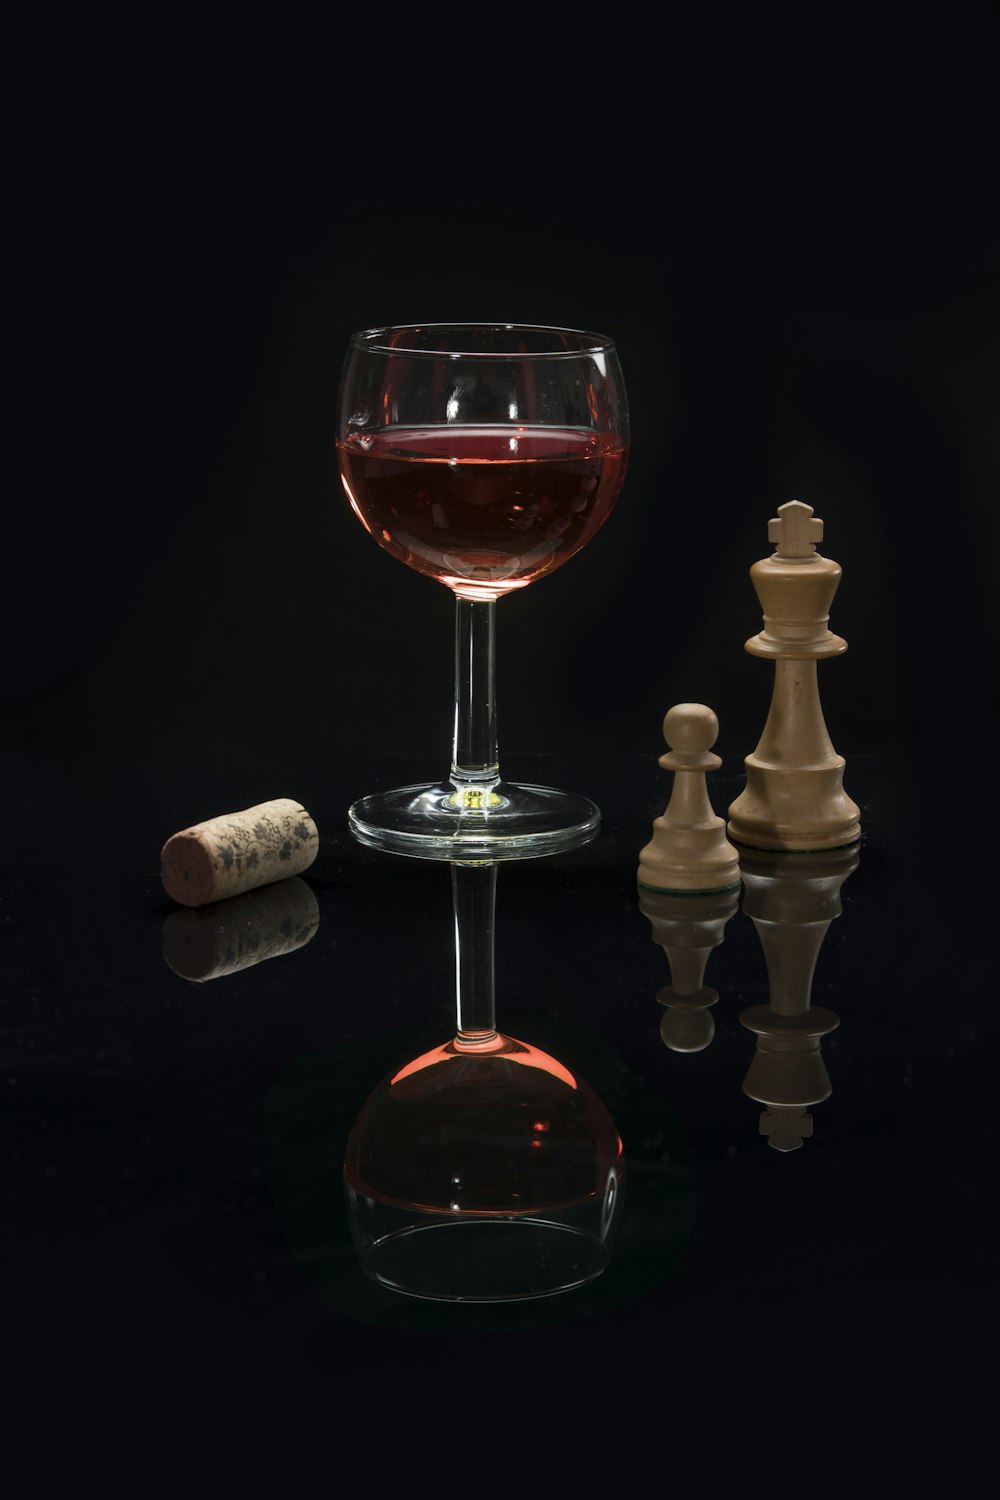 Weinglas mit langem Stiel und roter Flüssigkeit